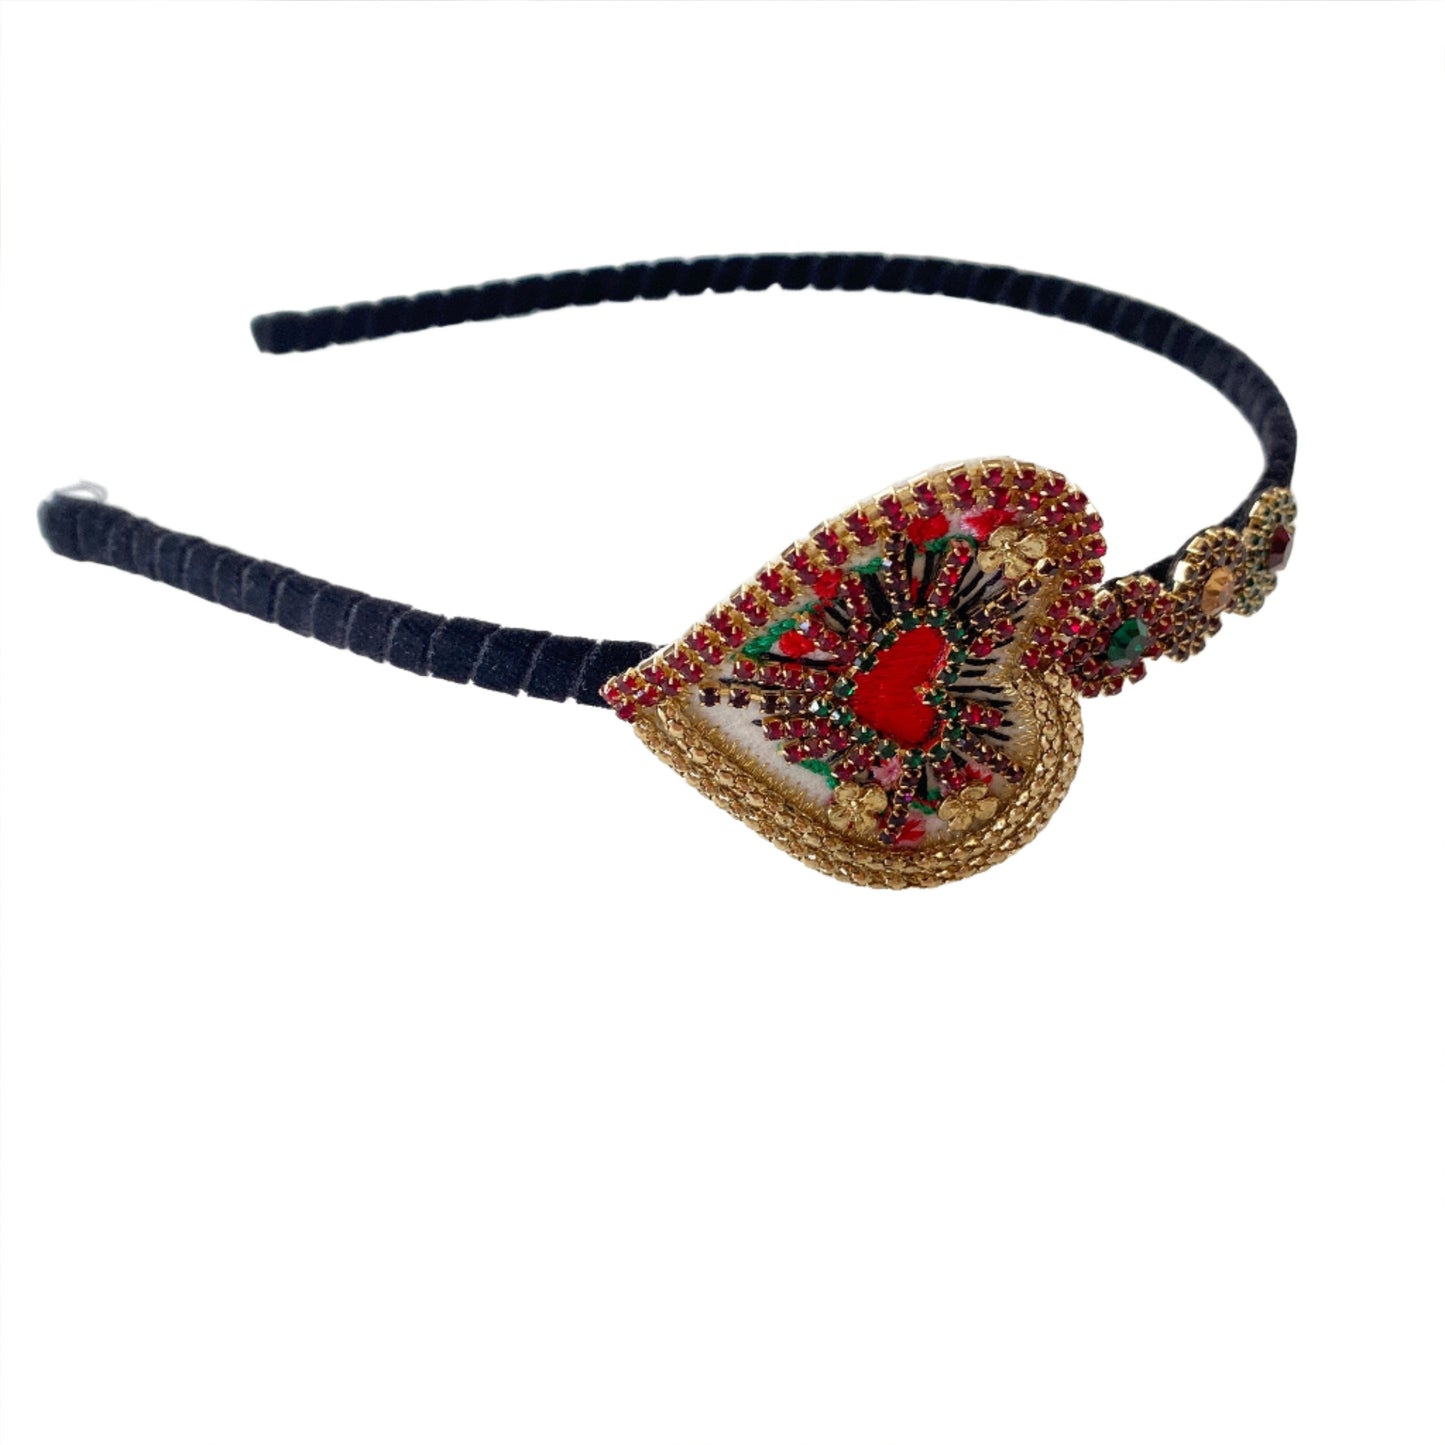 Jeweled Heart Headband